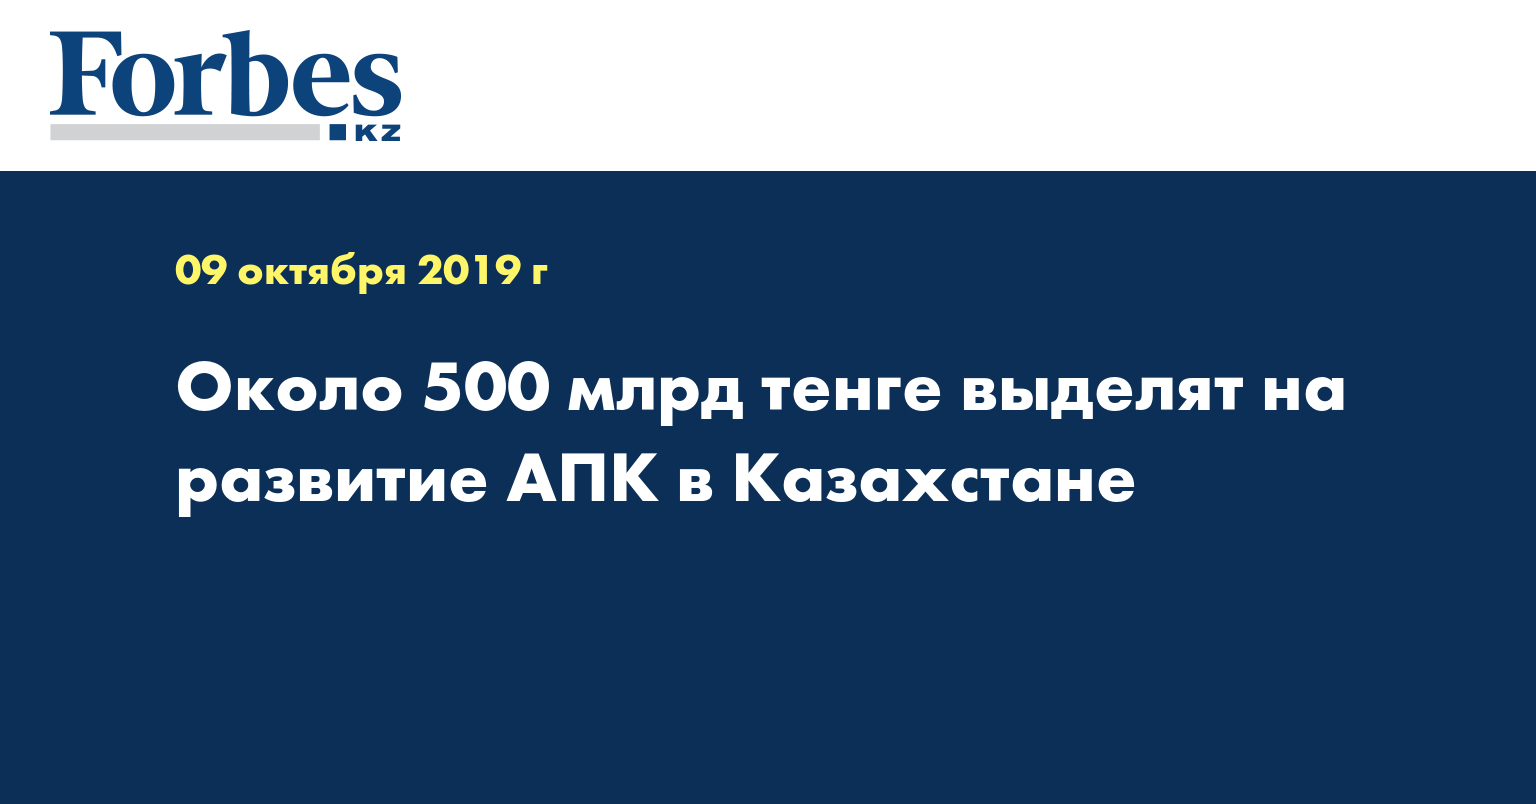 Около 500 млрд тенге выделят на развитие АПК в Казахстане